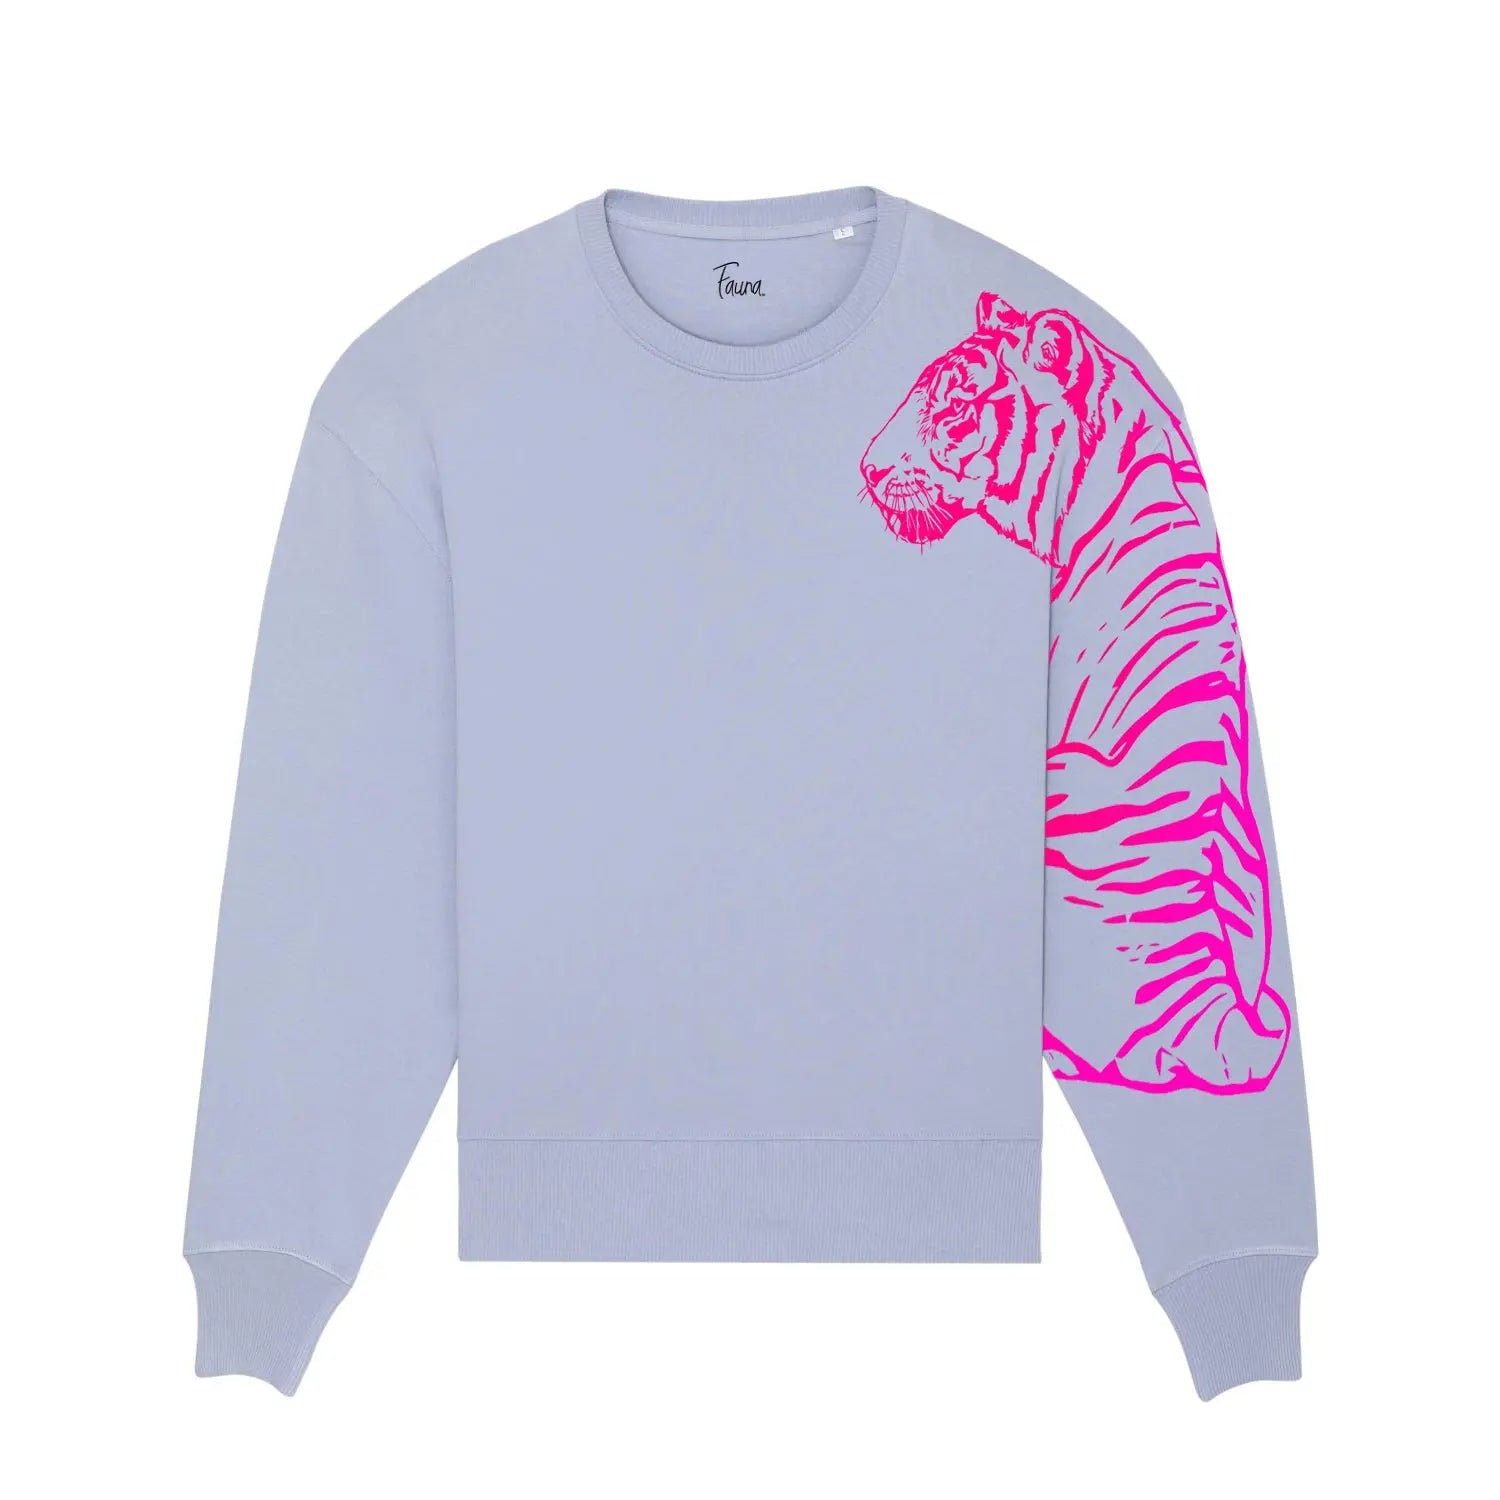 Tiger Queen - Women's Organic Cotton Sleep Shirt - Navy